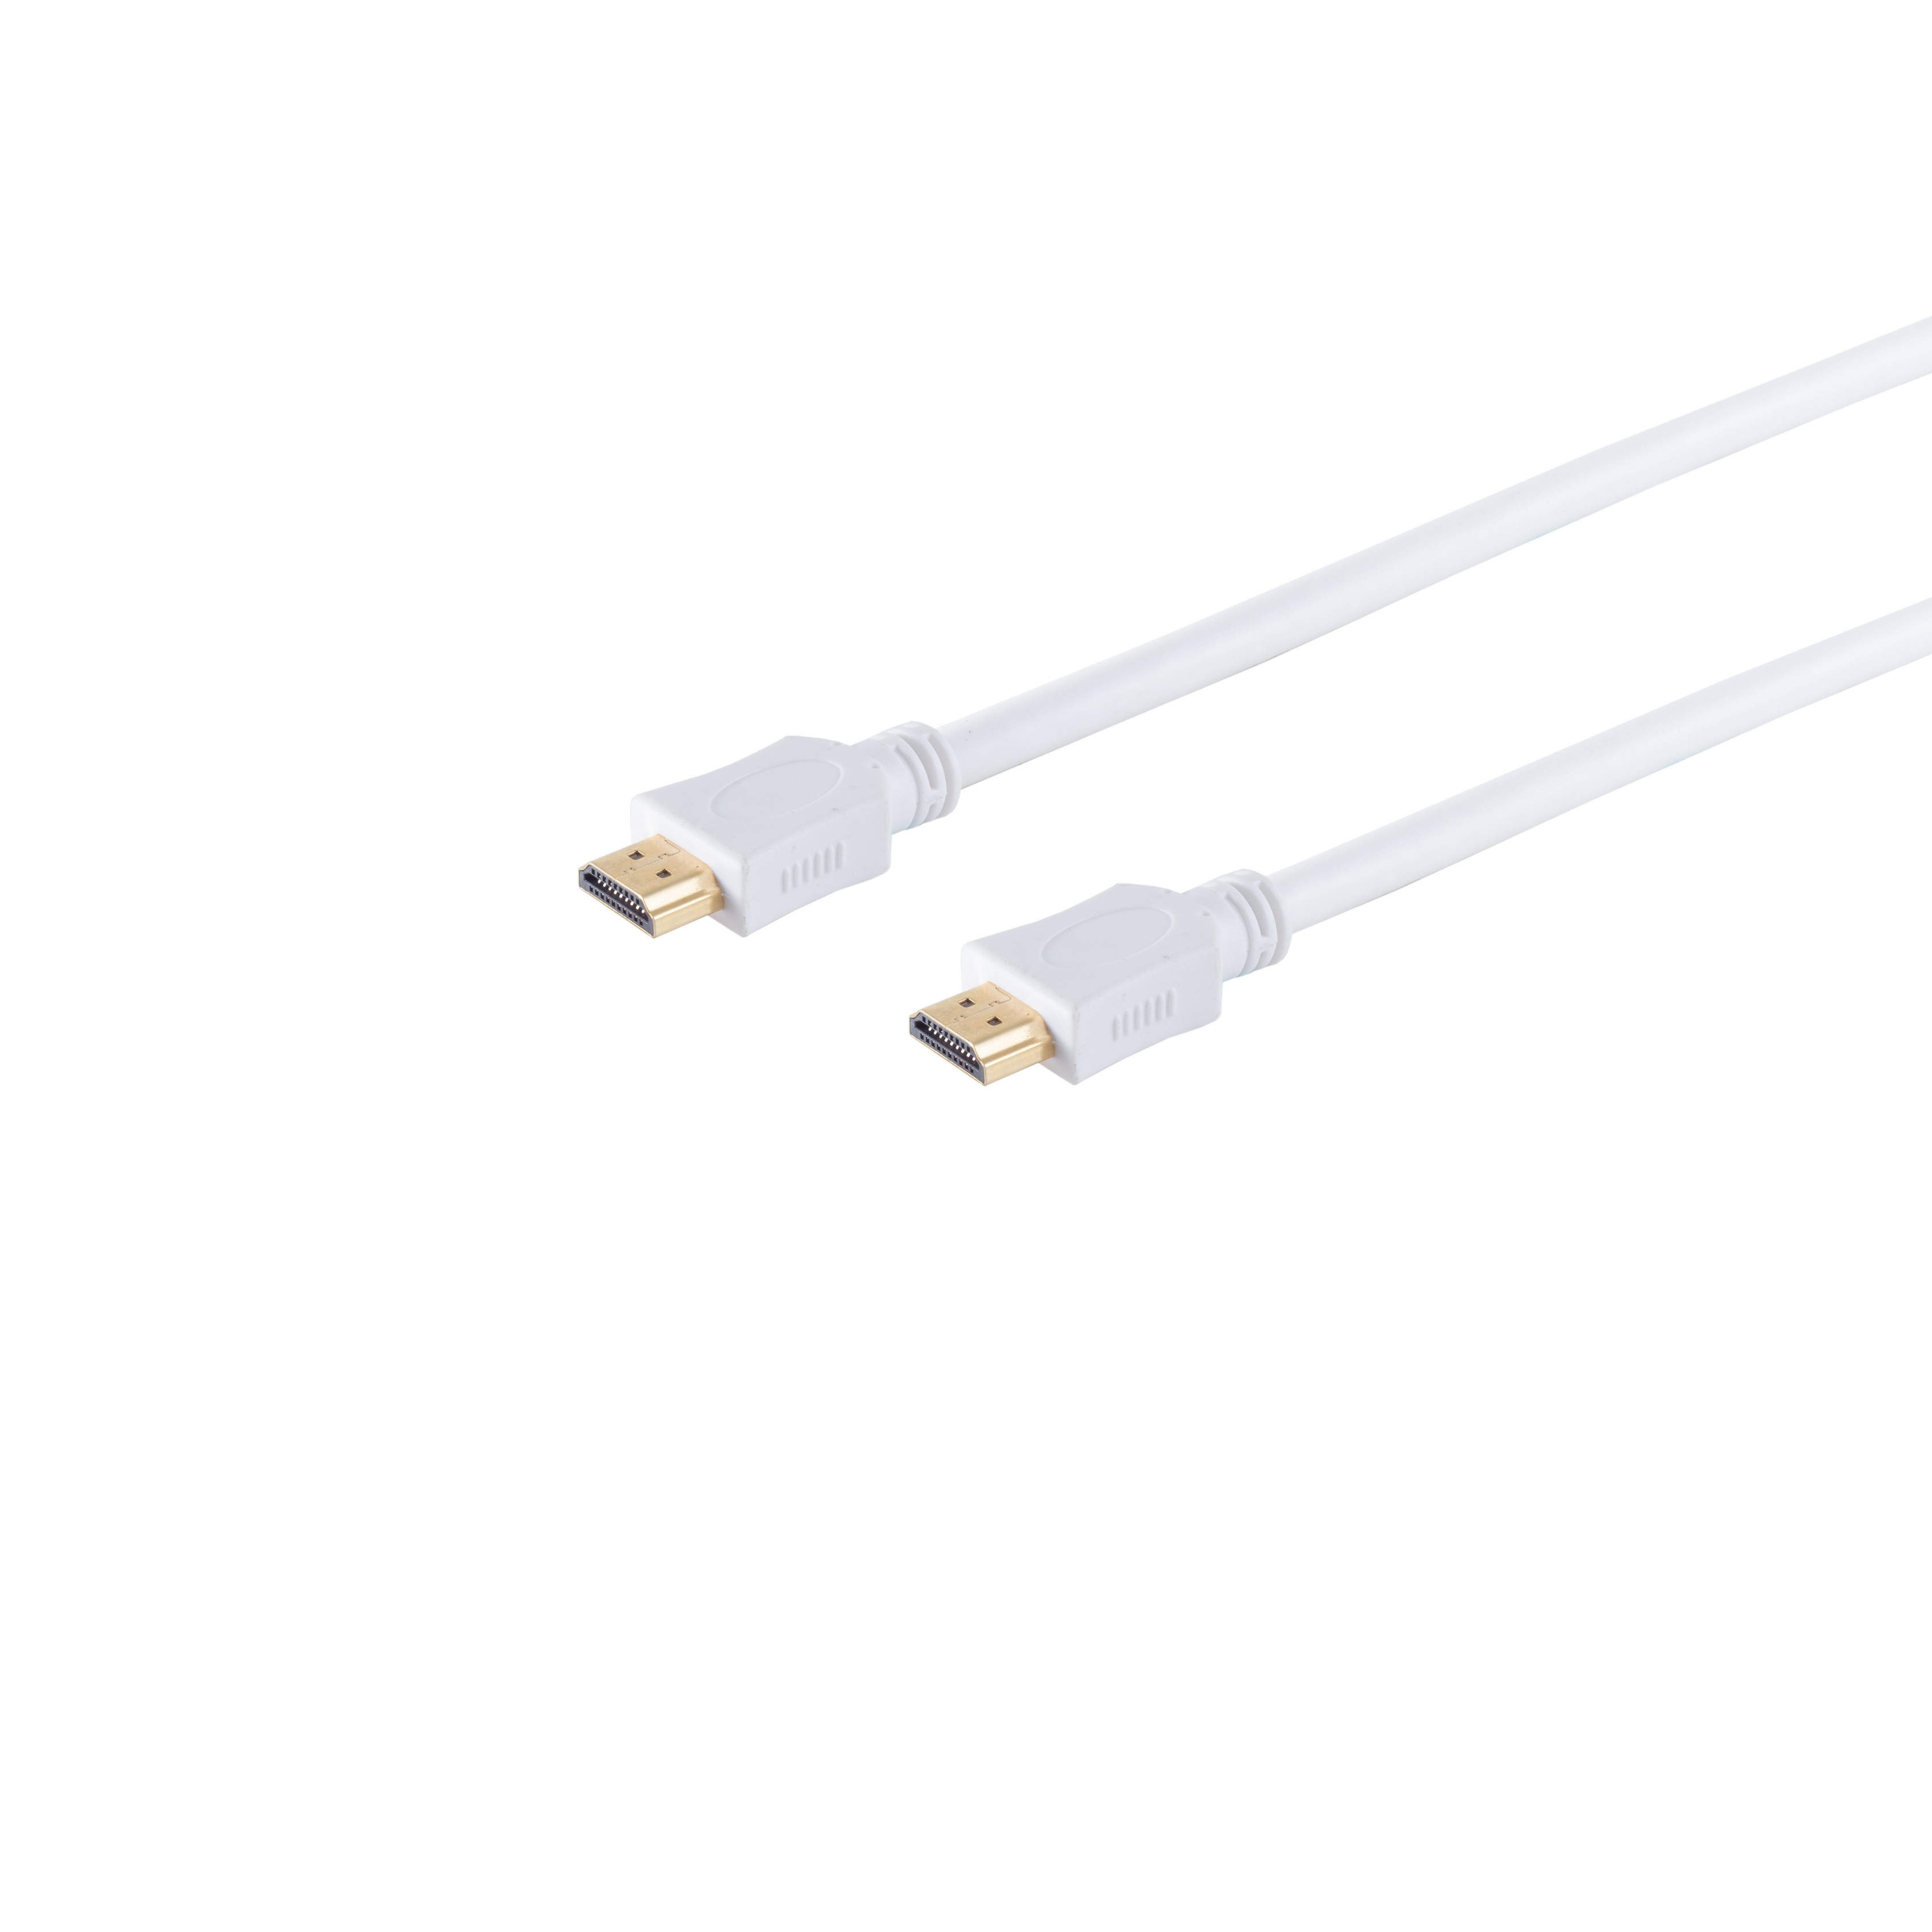 S/CONN MAXIMUM CONNECTIVITY HDMI A-Stecker/HDMI 1,5m weiß A-Stecker Kabel HDMI HEAC verg